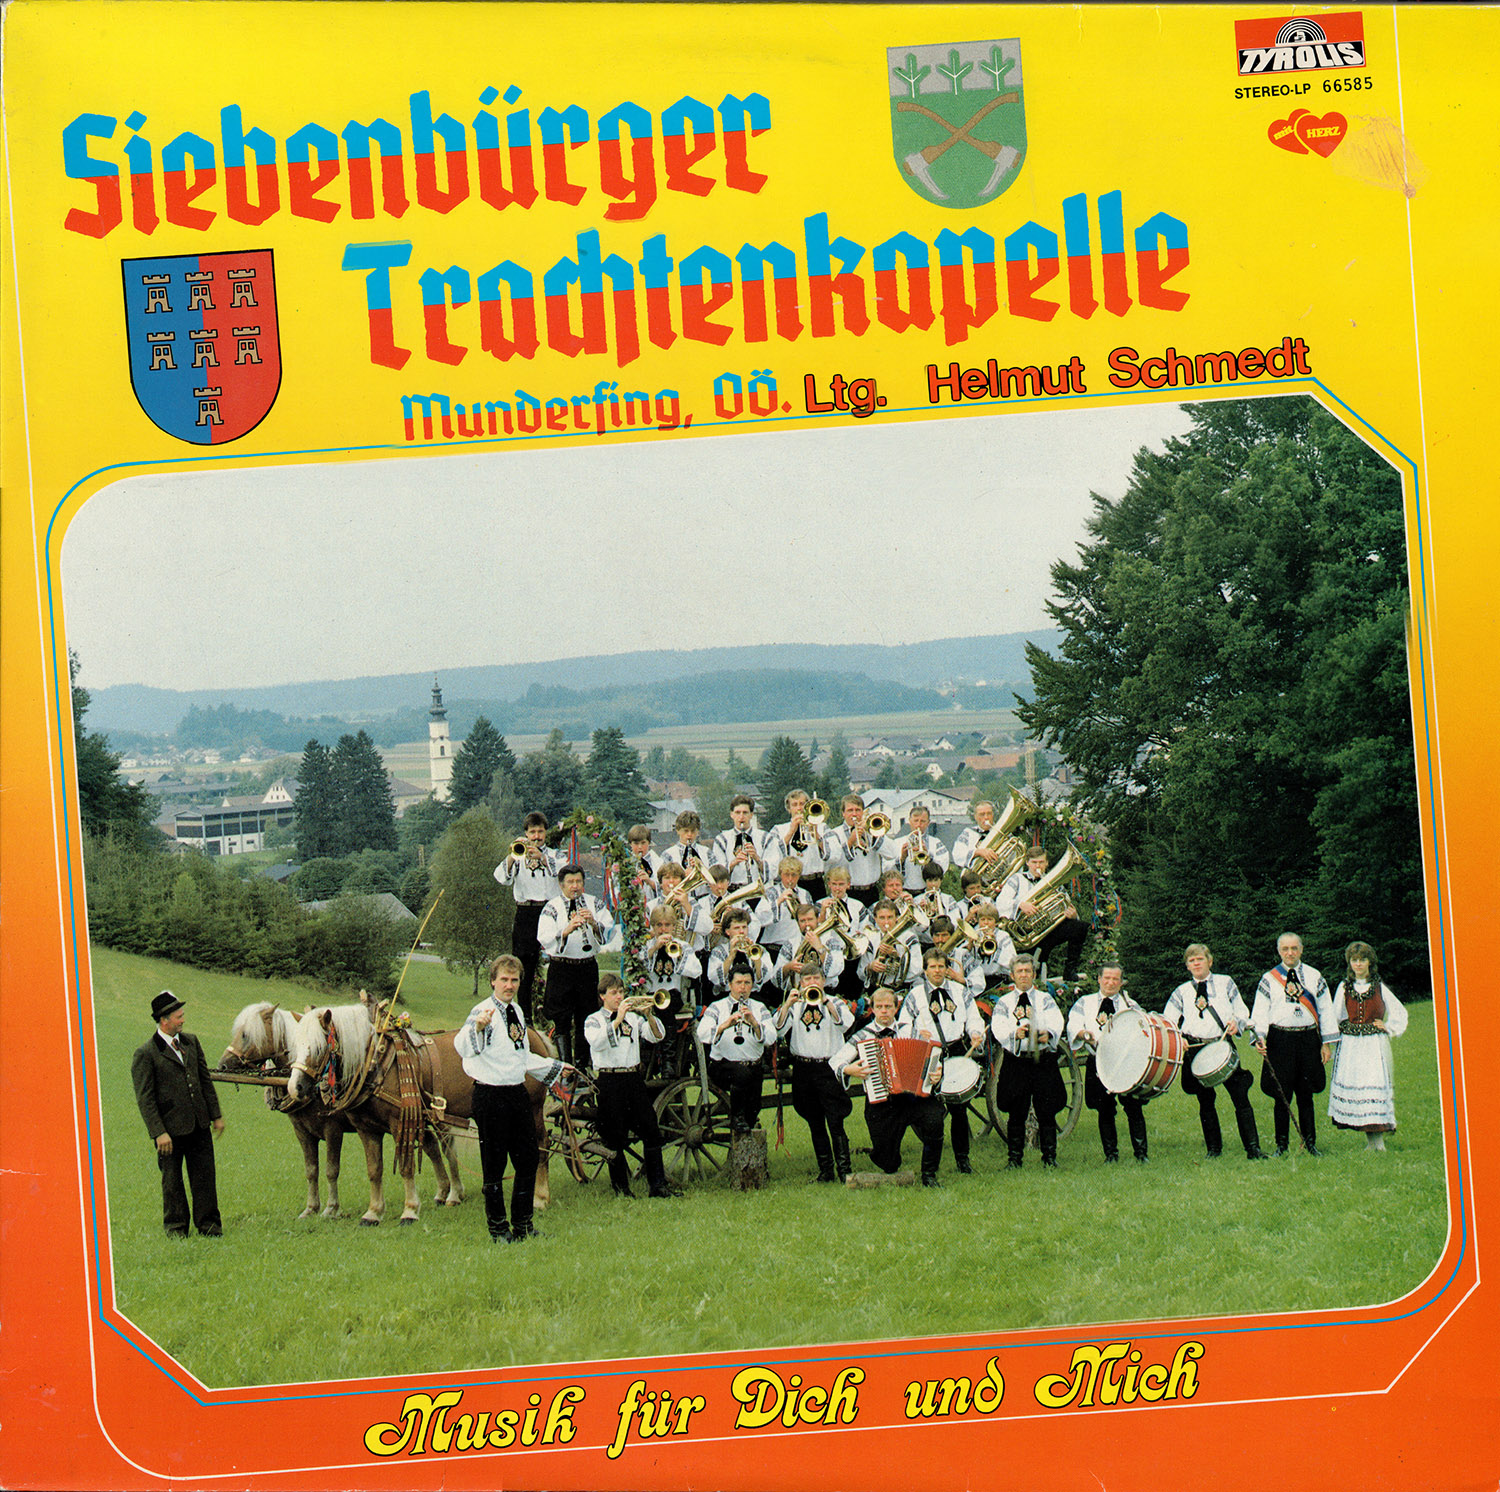 1984 siebenbuerger trachtenkapelle musik fuer dich und mich small